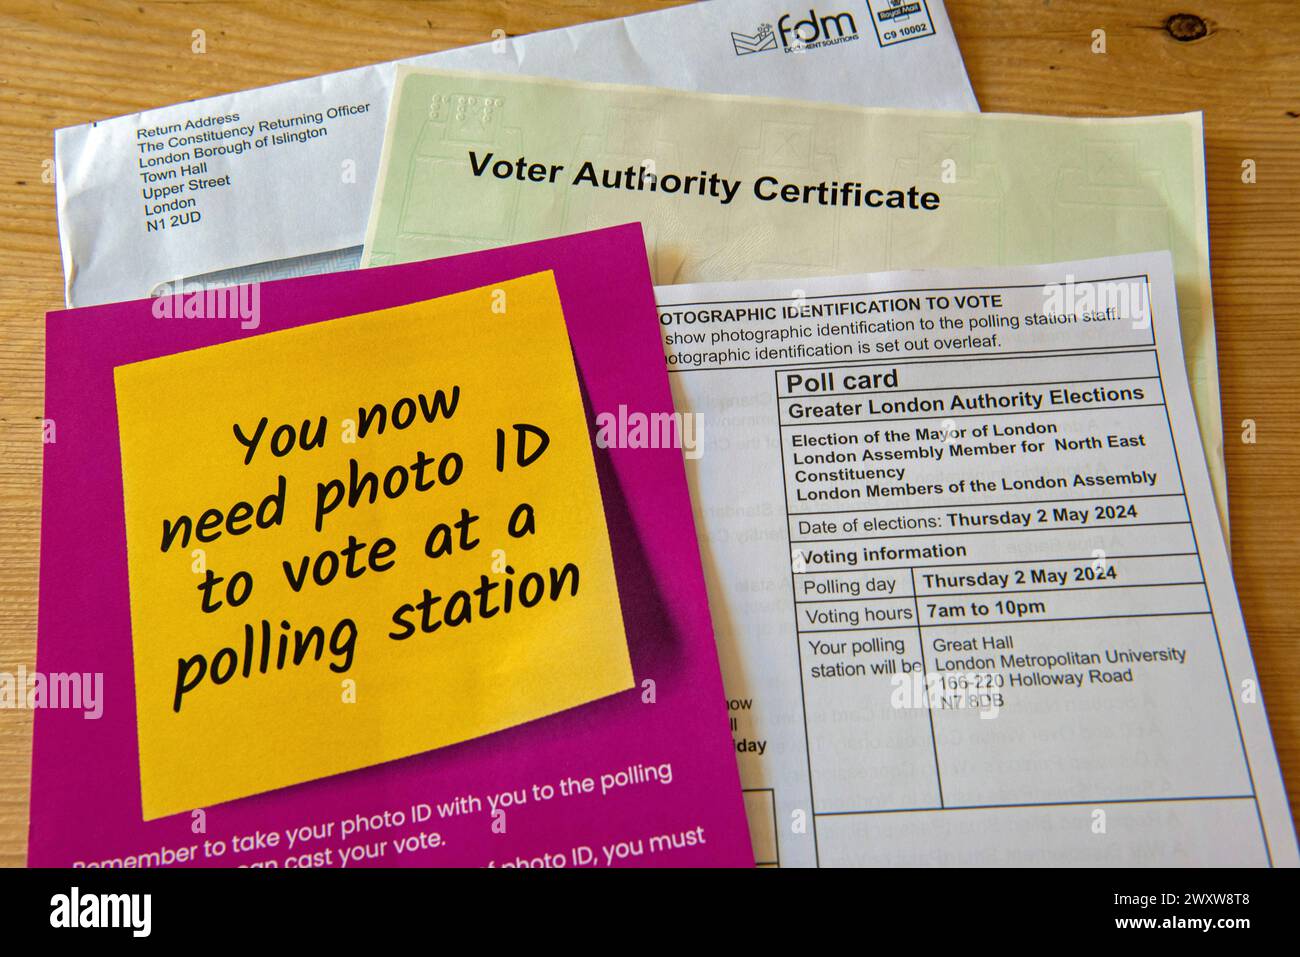 Certificato dell'autorità elettorale con scheda elettorale e opuscolo sull'ID elettore necessario per le elezioni. Elezione del sindaco di Londra 2 maggio 2024, Inghilterra, Brita Foto Stock